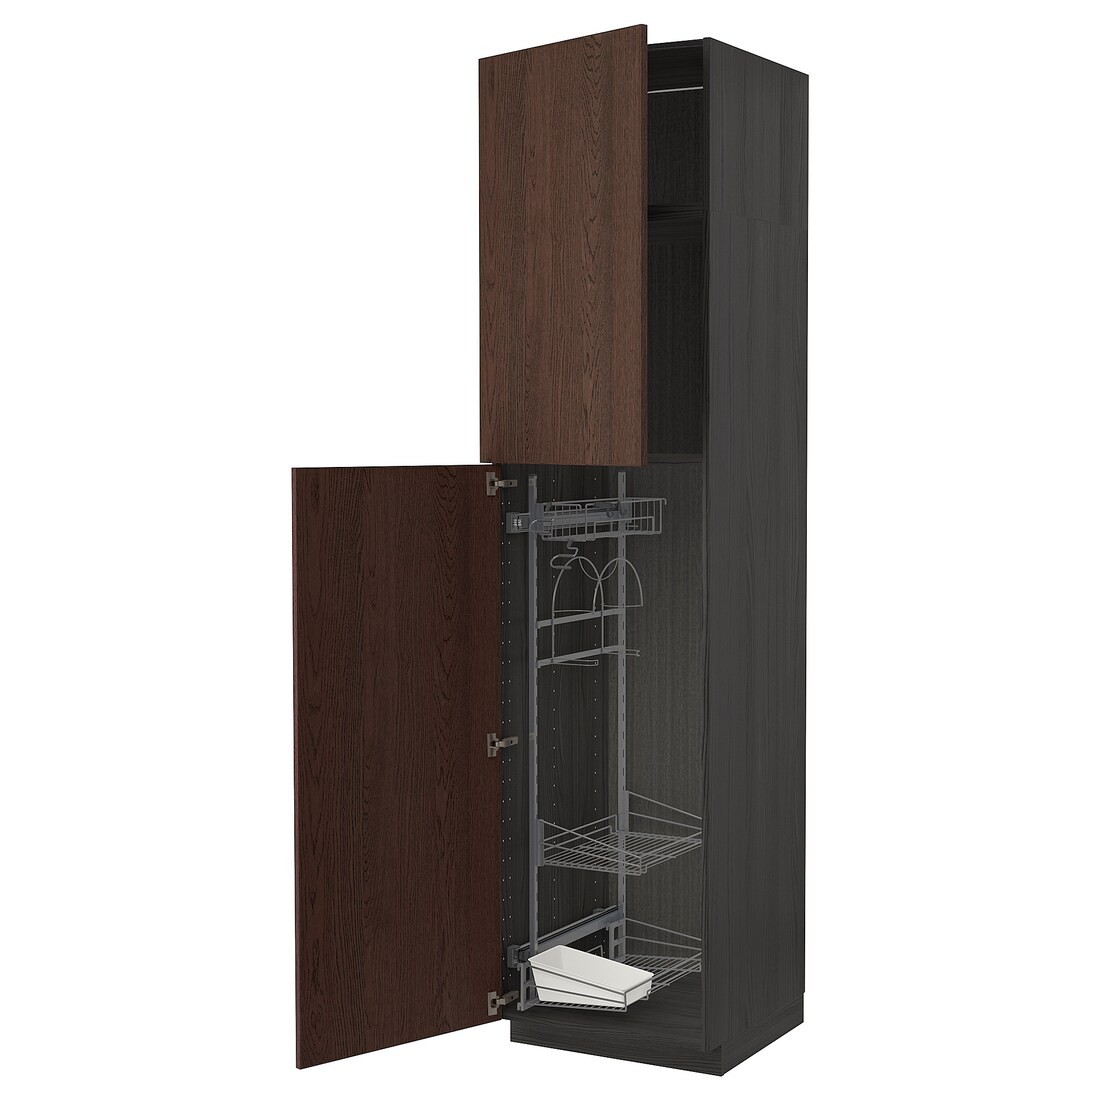 METOD МЕТОД Высокий шкаф с отделением для аксессуаров для уборки, черный / Sinarp коричневый, 60x60x240 см